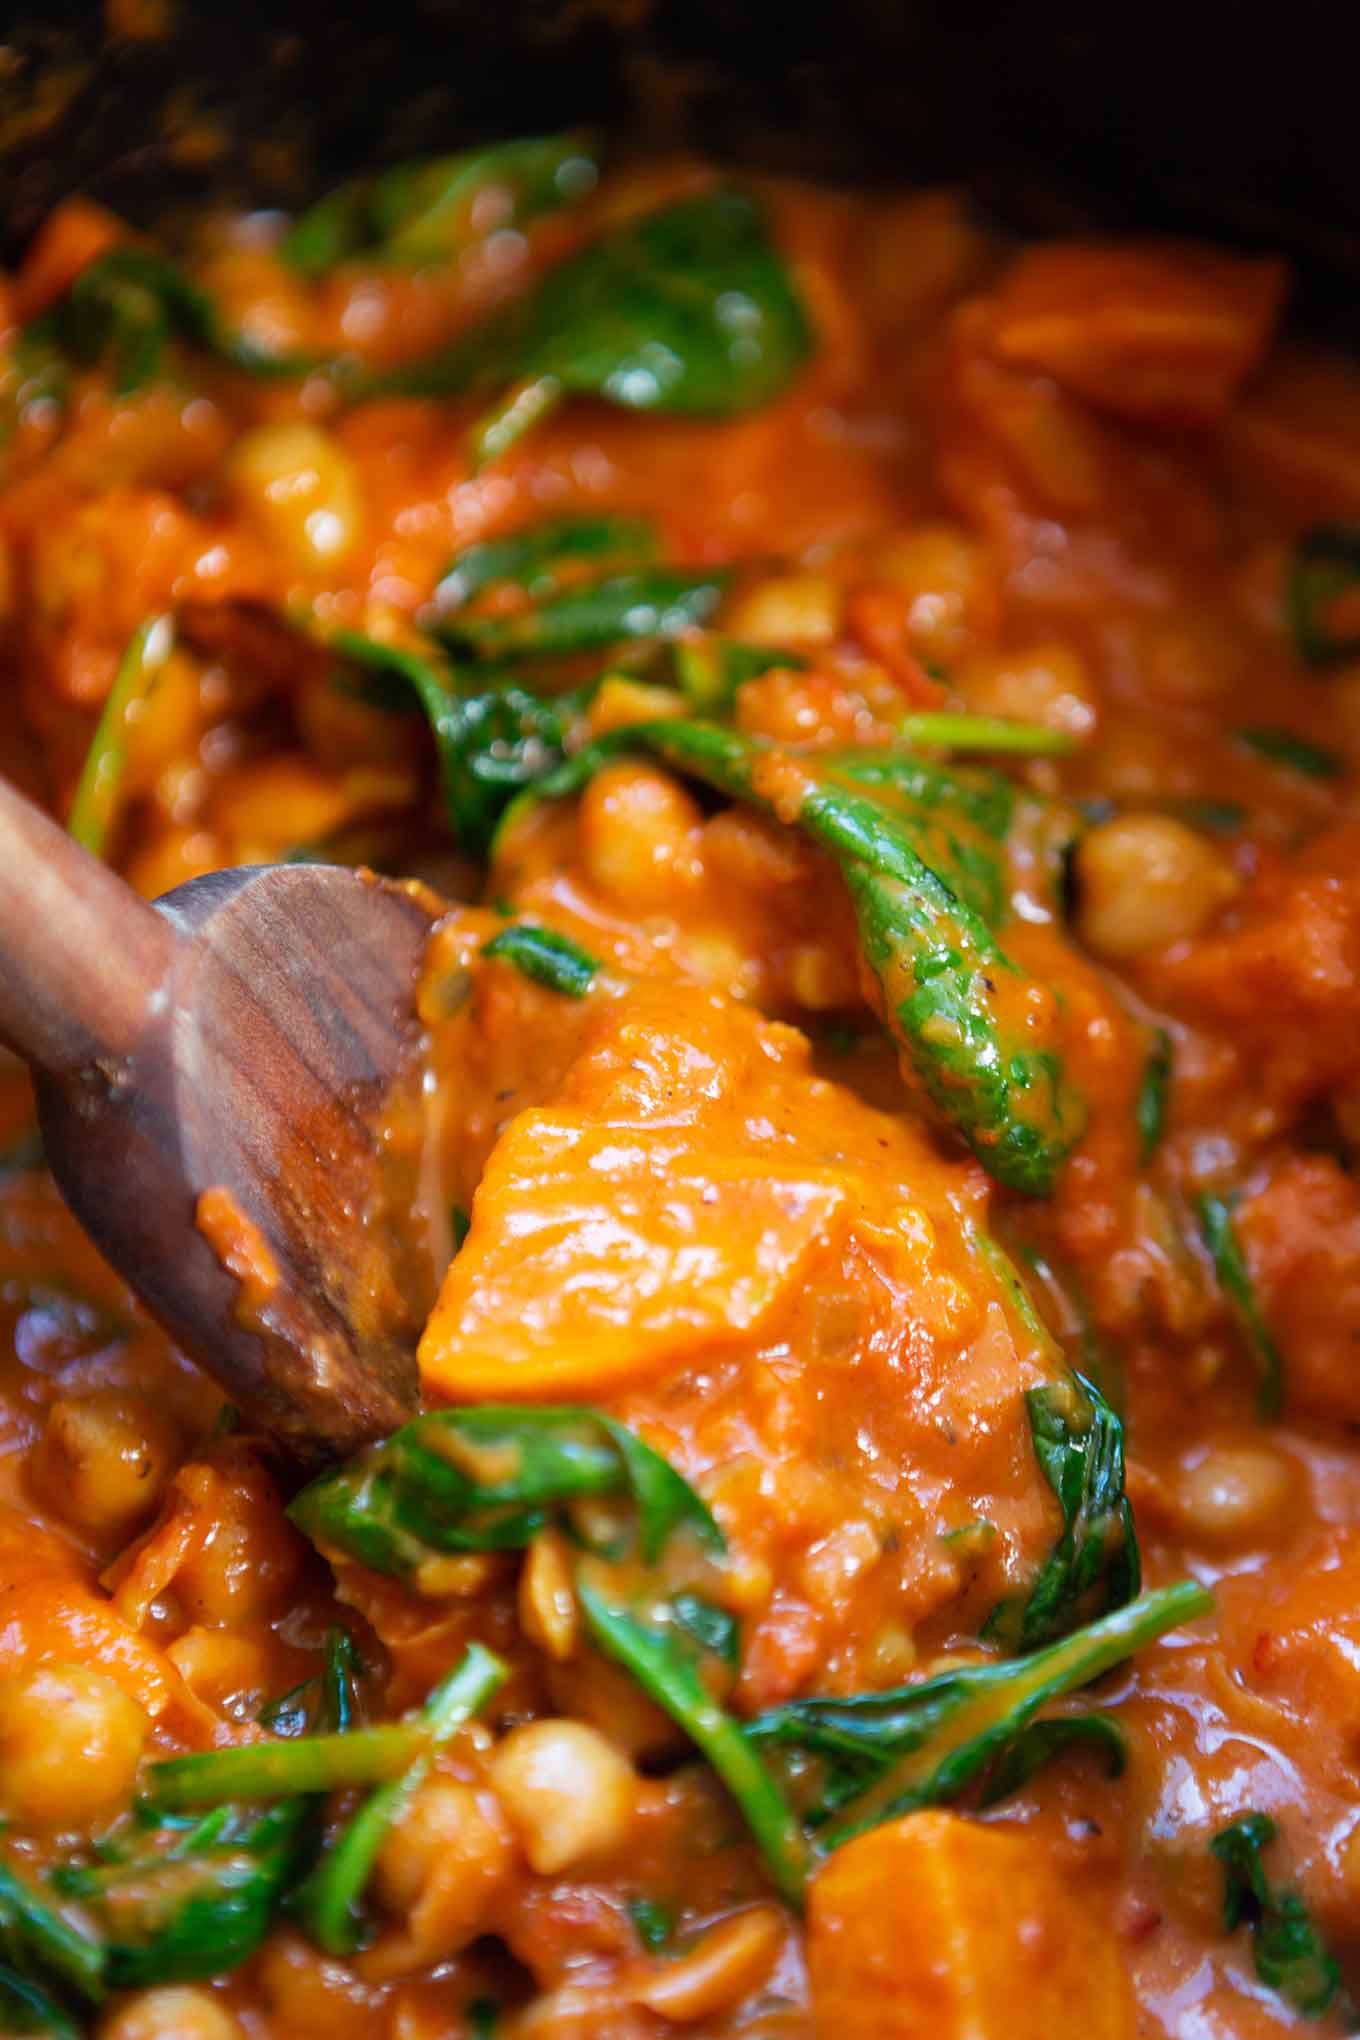 Süßkartoffel-Kichererbsen-Curry mit Spinat. Dieses 30-Minuten Rezept ist einfach, kuschelig und perfekt für den Herbst! - Kochkarussell.com #süßkartoffelcurry #curry #rezept #schnellundeinfach